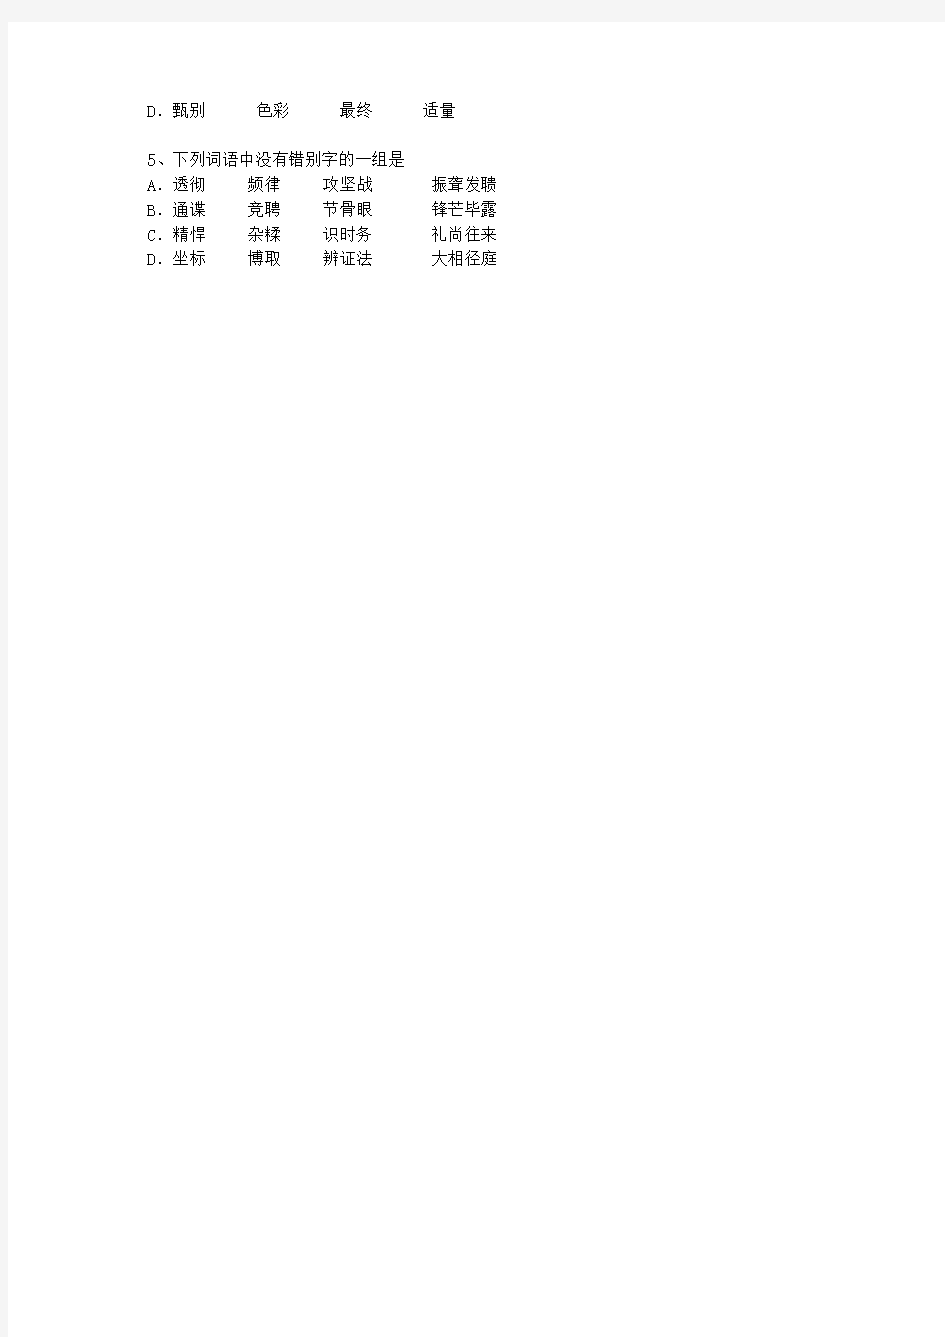 2013宁夏回族自治区语文大纲(答案详解版)考试技巧、答题原则